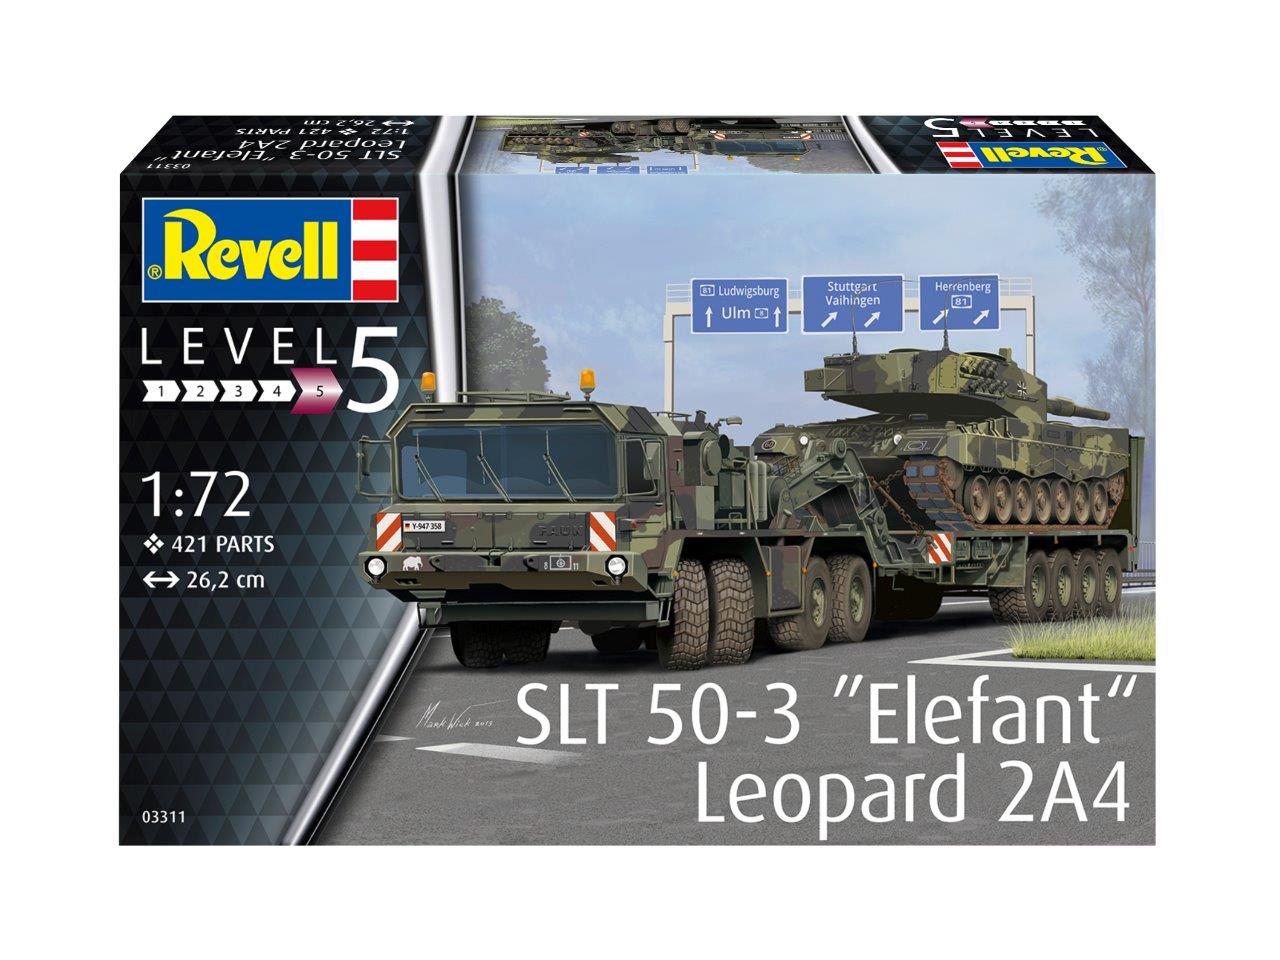 SLT 50-3 "Elefant" & Leopard 2A4